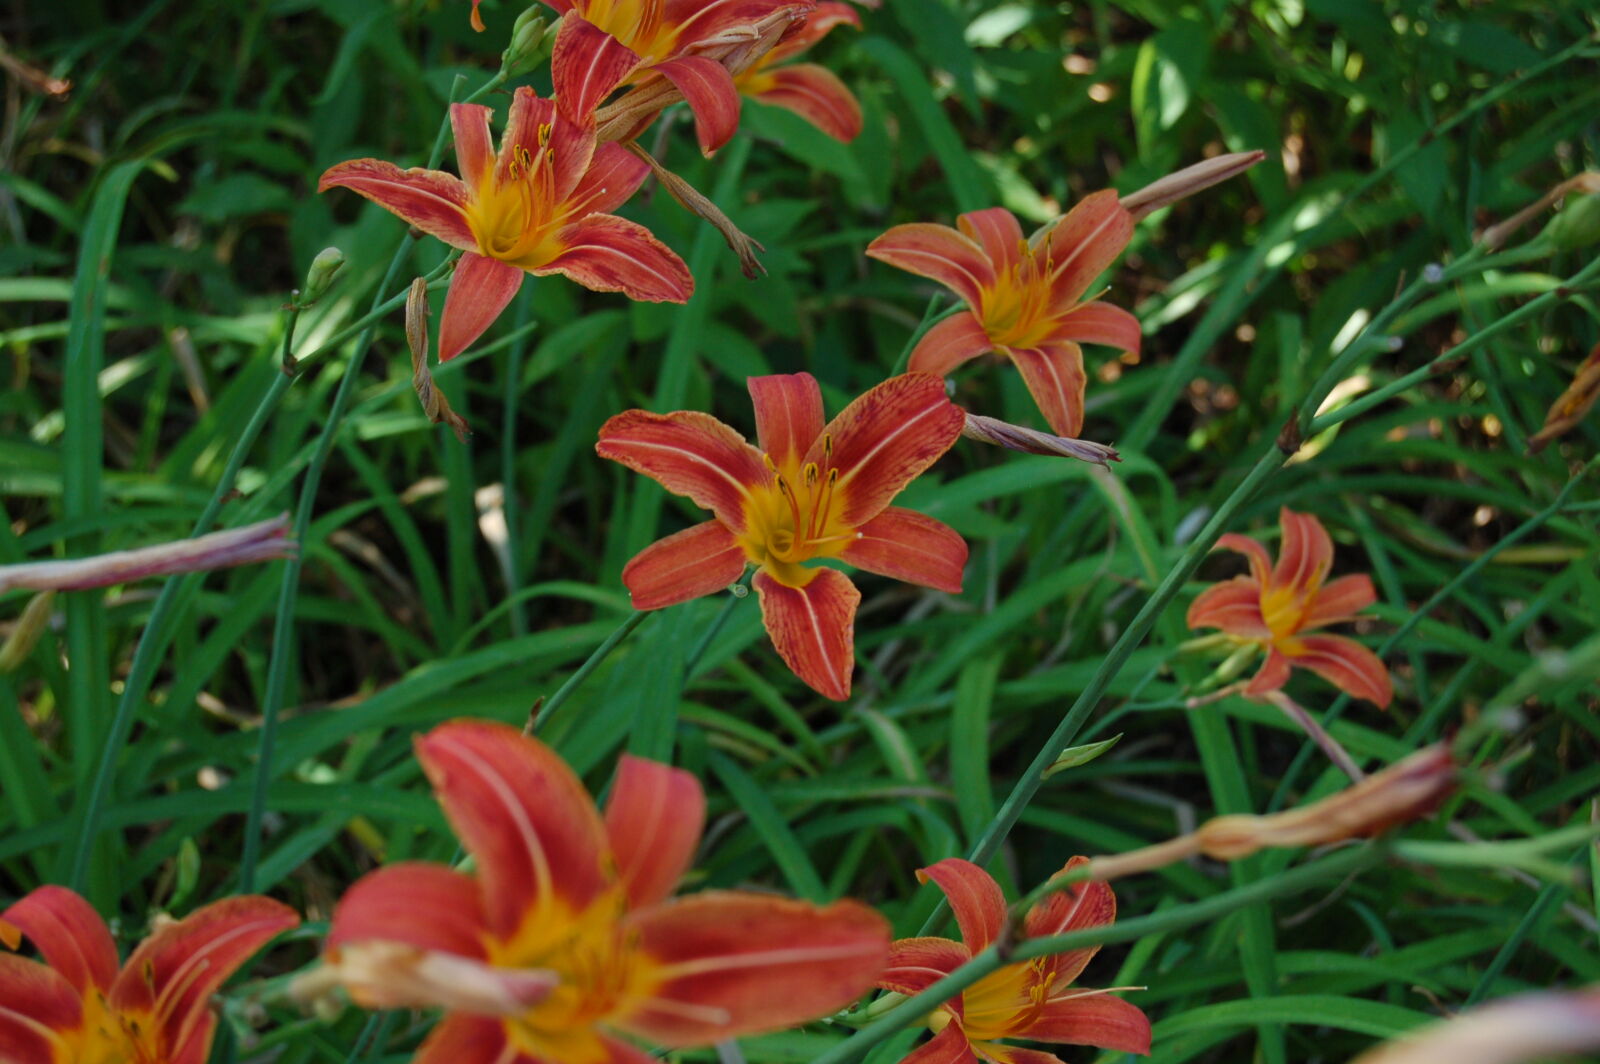 AF-S DX Zoom-Nikkor 18-55mm f/3.5-5.6G ED sample photo. Flower, flowers, garden, orange photography